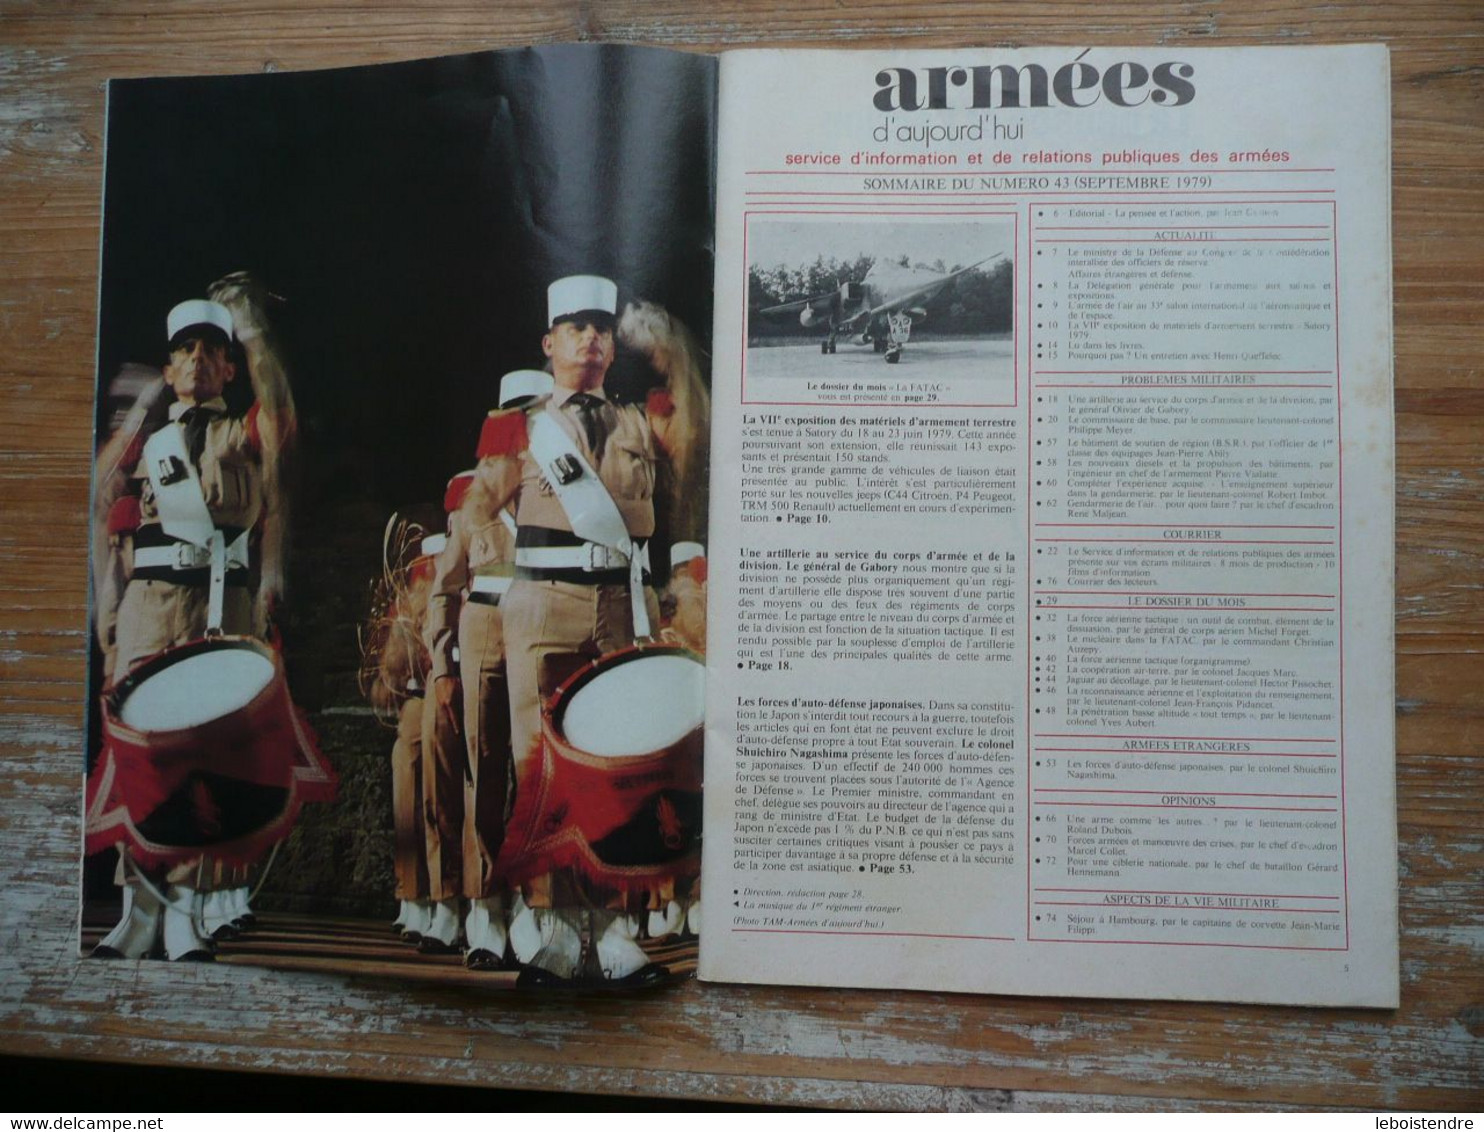 ARMEES D AUJOURD'HUI N° 43 SEPTEMBRE 1979 MENSUEL SATORY 1979 FORCES D AUTO-DEFENSE JAPONAISES FORCE AERIENNE TACTIQUE - Französisch